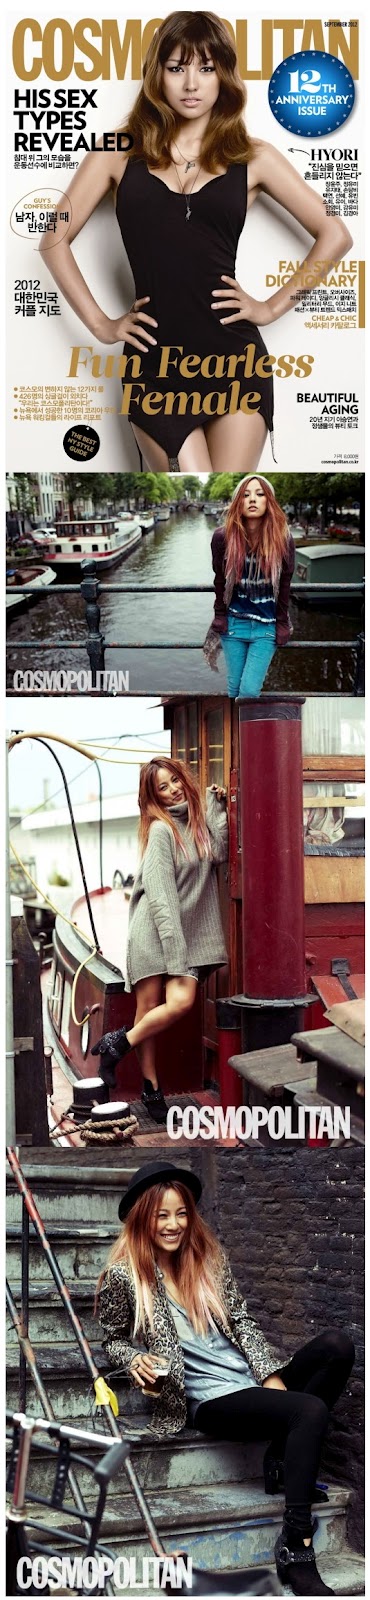 [News][17.08.12] Lee Hyori quyến rũ trên trang bìa tạp chí Cosmopolitan 71310